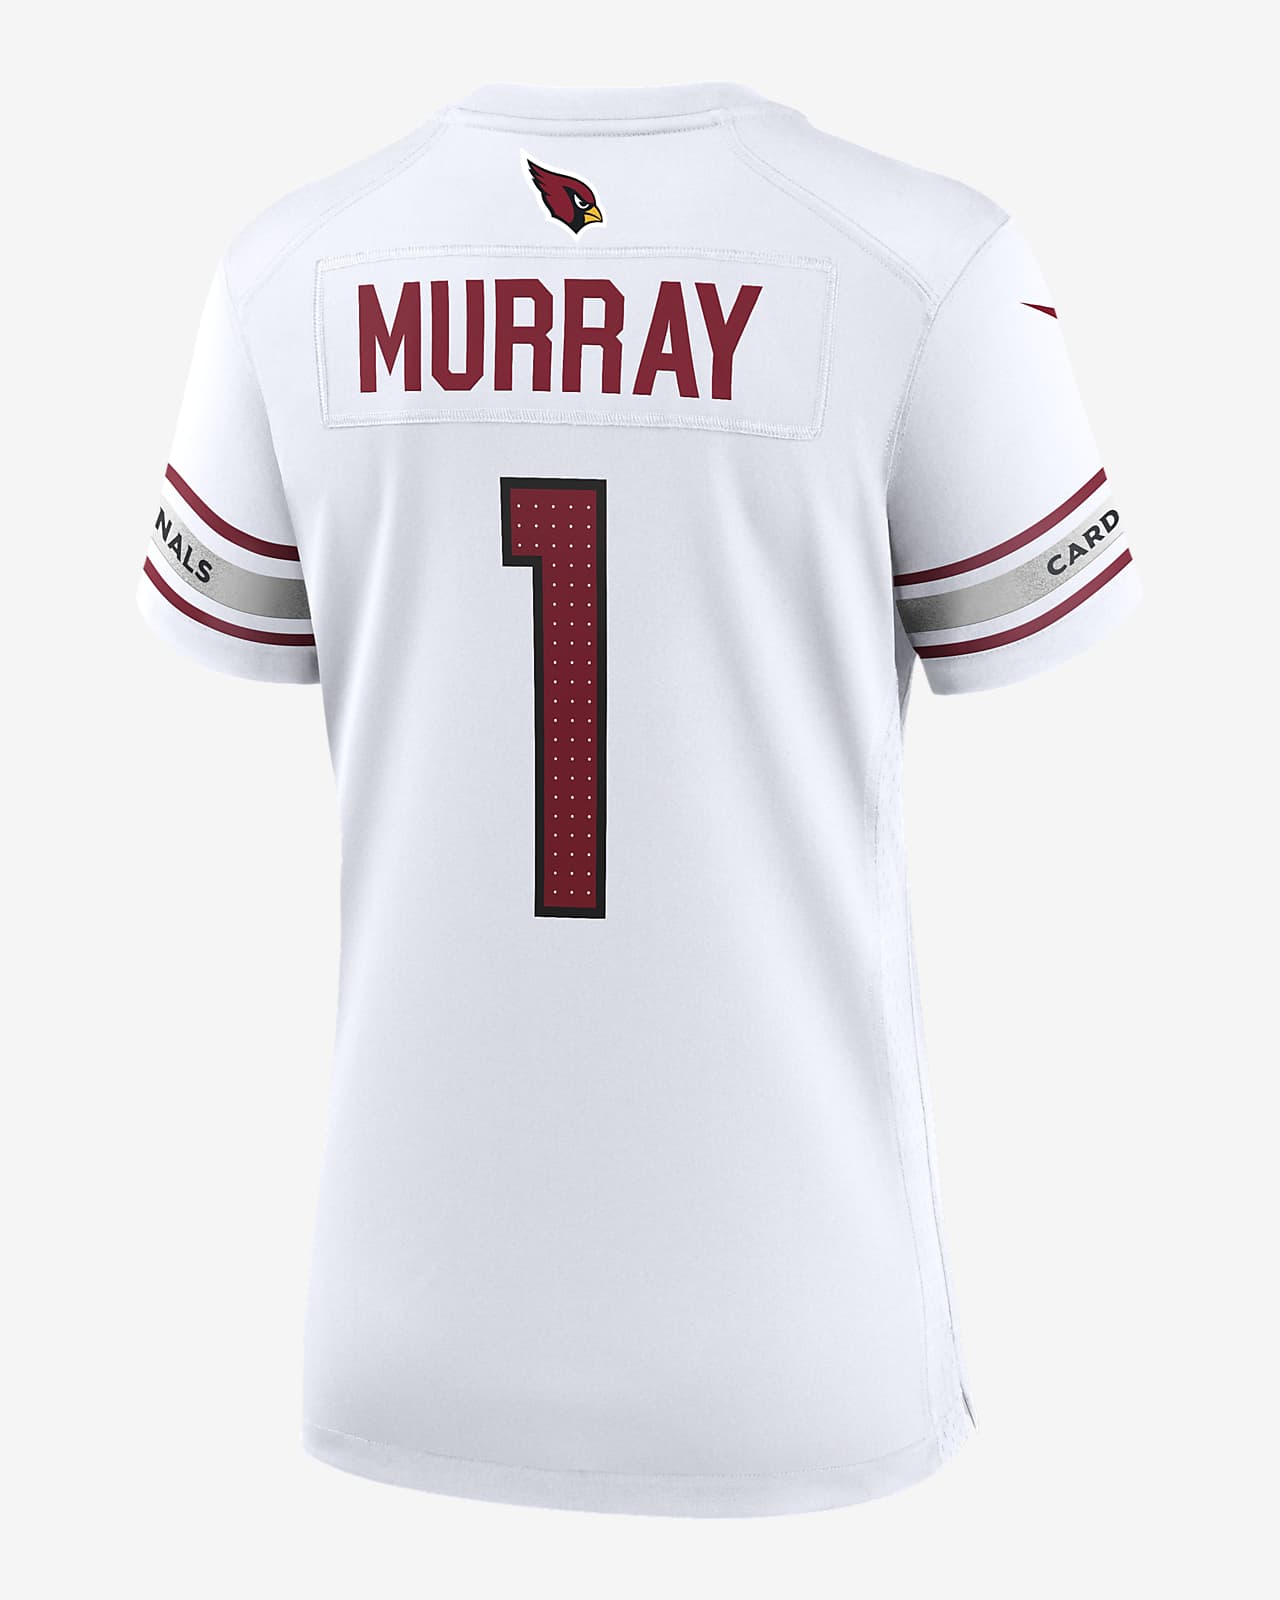 Kyler Murray Jerseys, Kyler Murray Shirts, Clothing